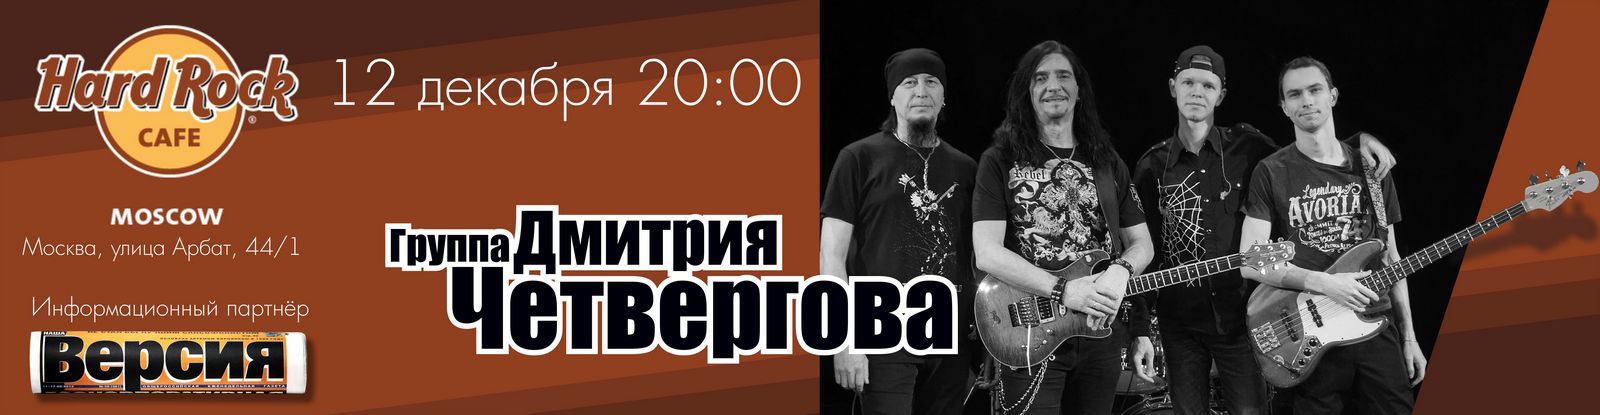 12 декабря 2020 концерт Дмитрия Четвергова и его группы в «Hard Rock Cafe»